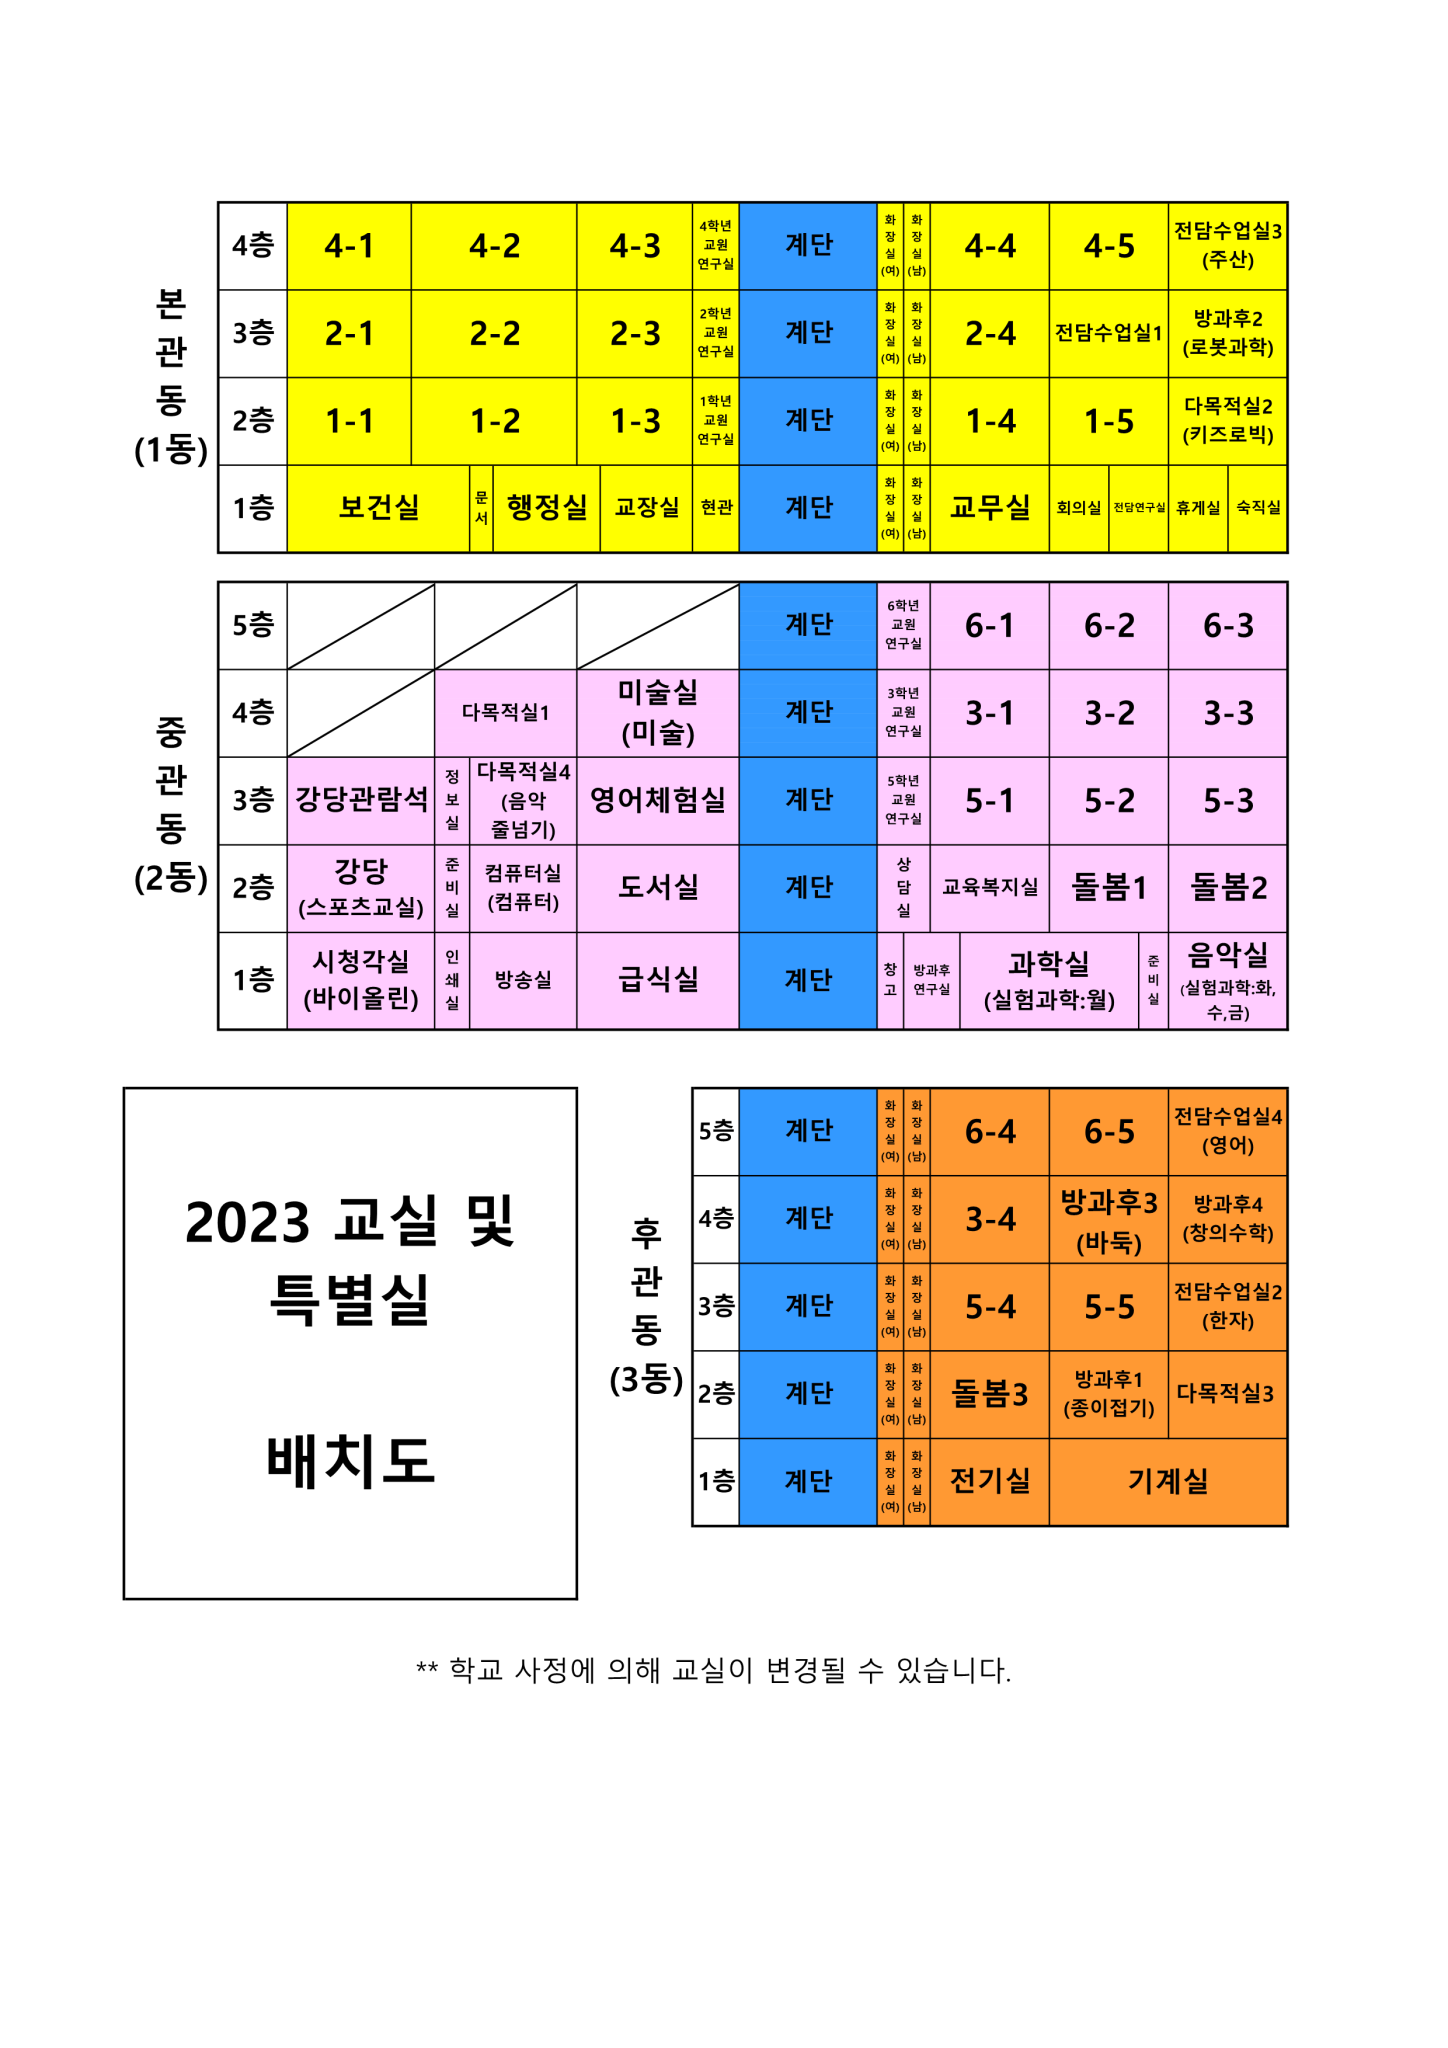 2023방과후학교 교실 배치도(3.10수정)_1